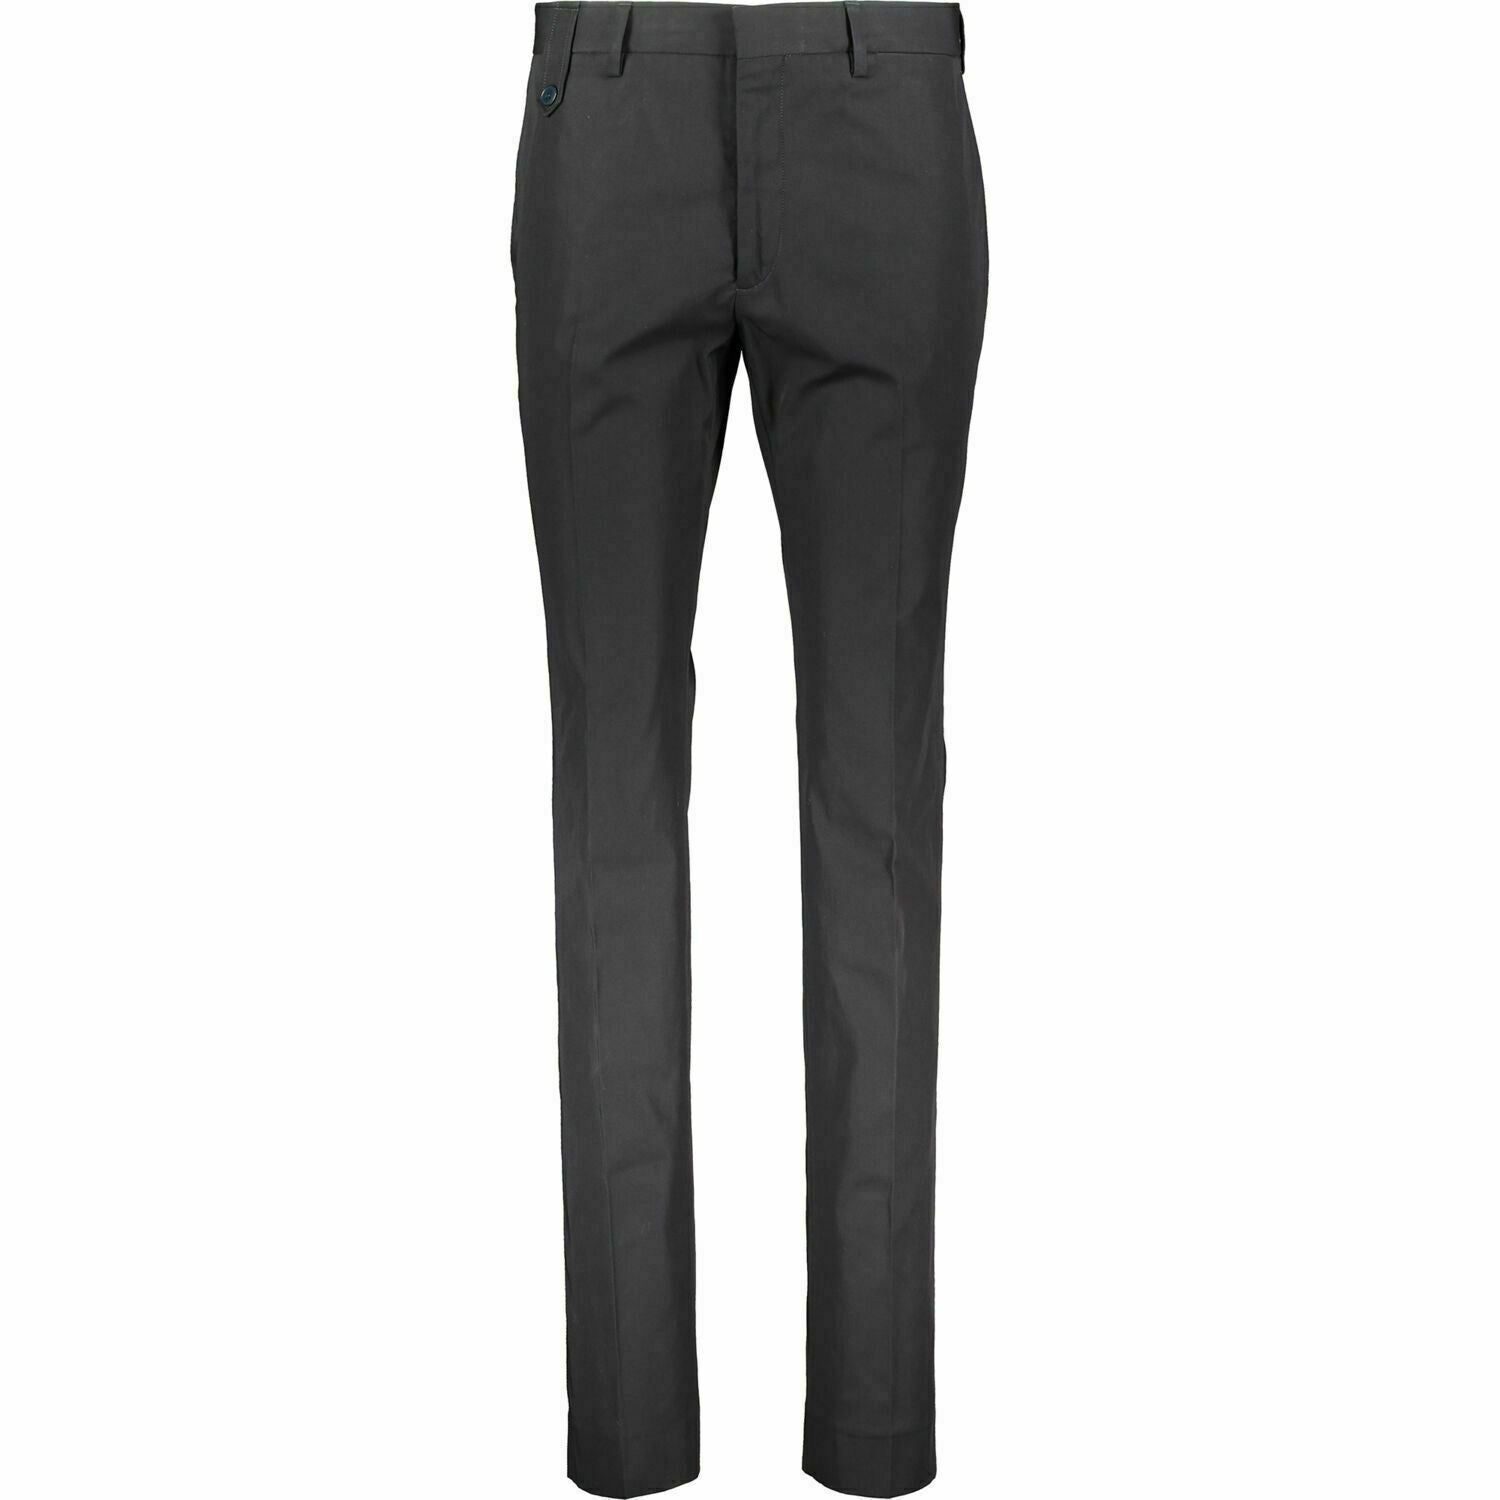 STELLA MCCARTNEY Men's Black Formal Slim Fit Trousers, size W28